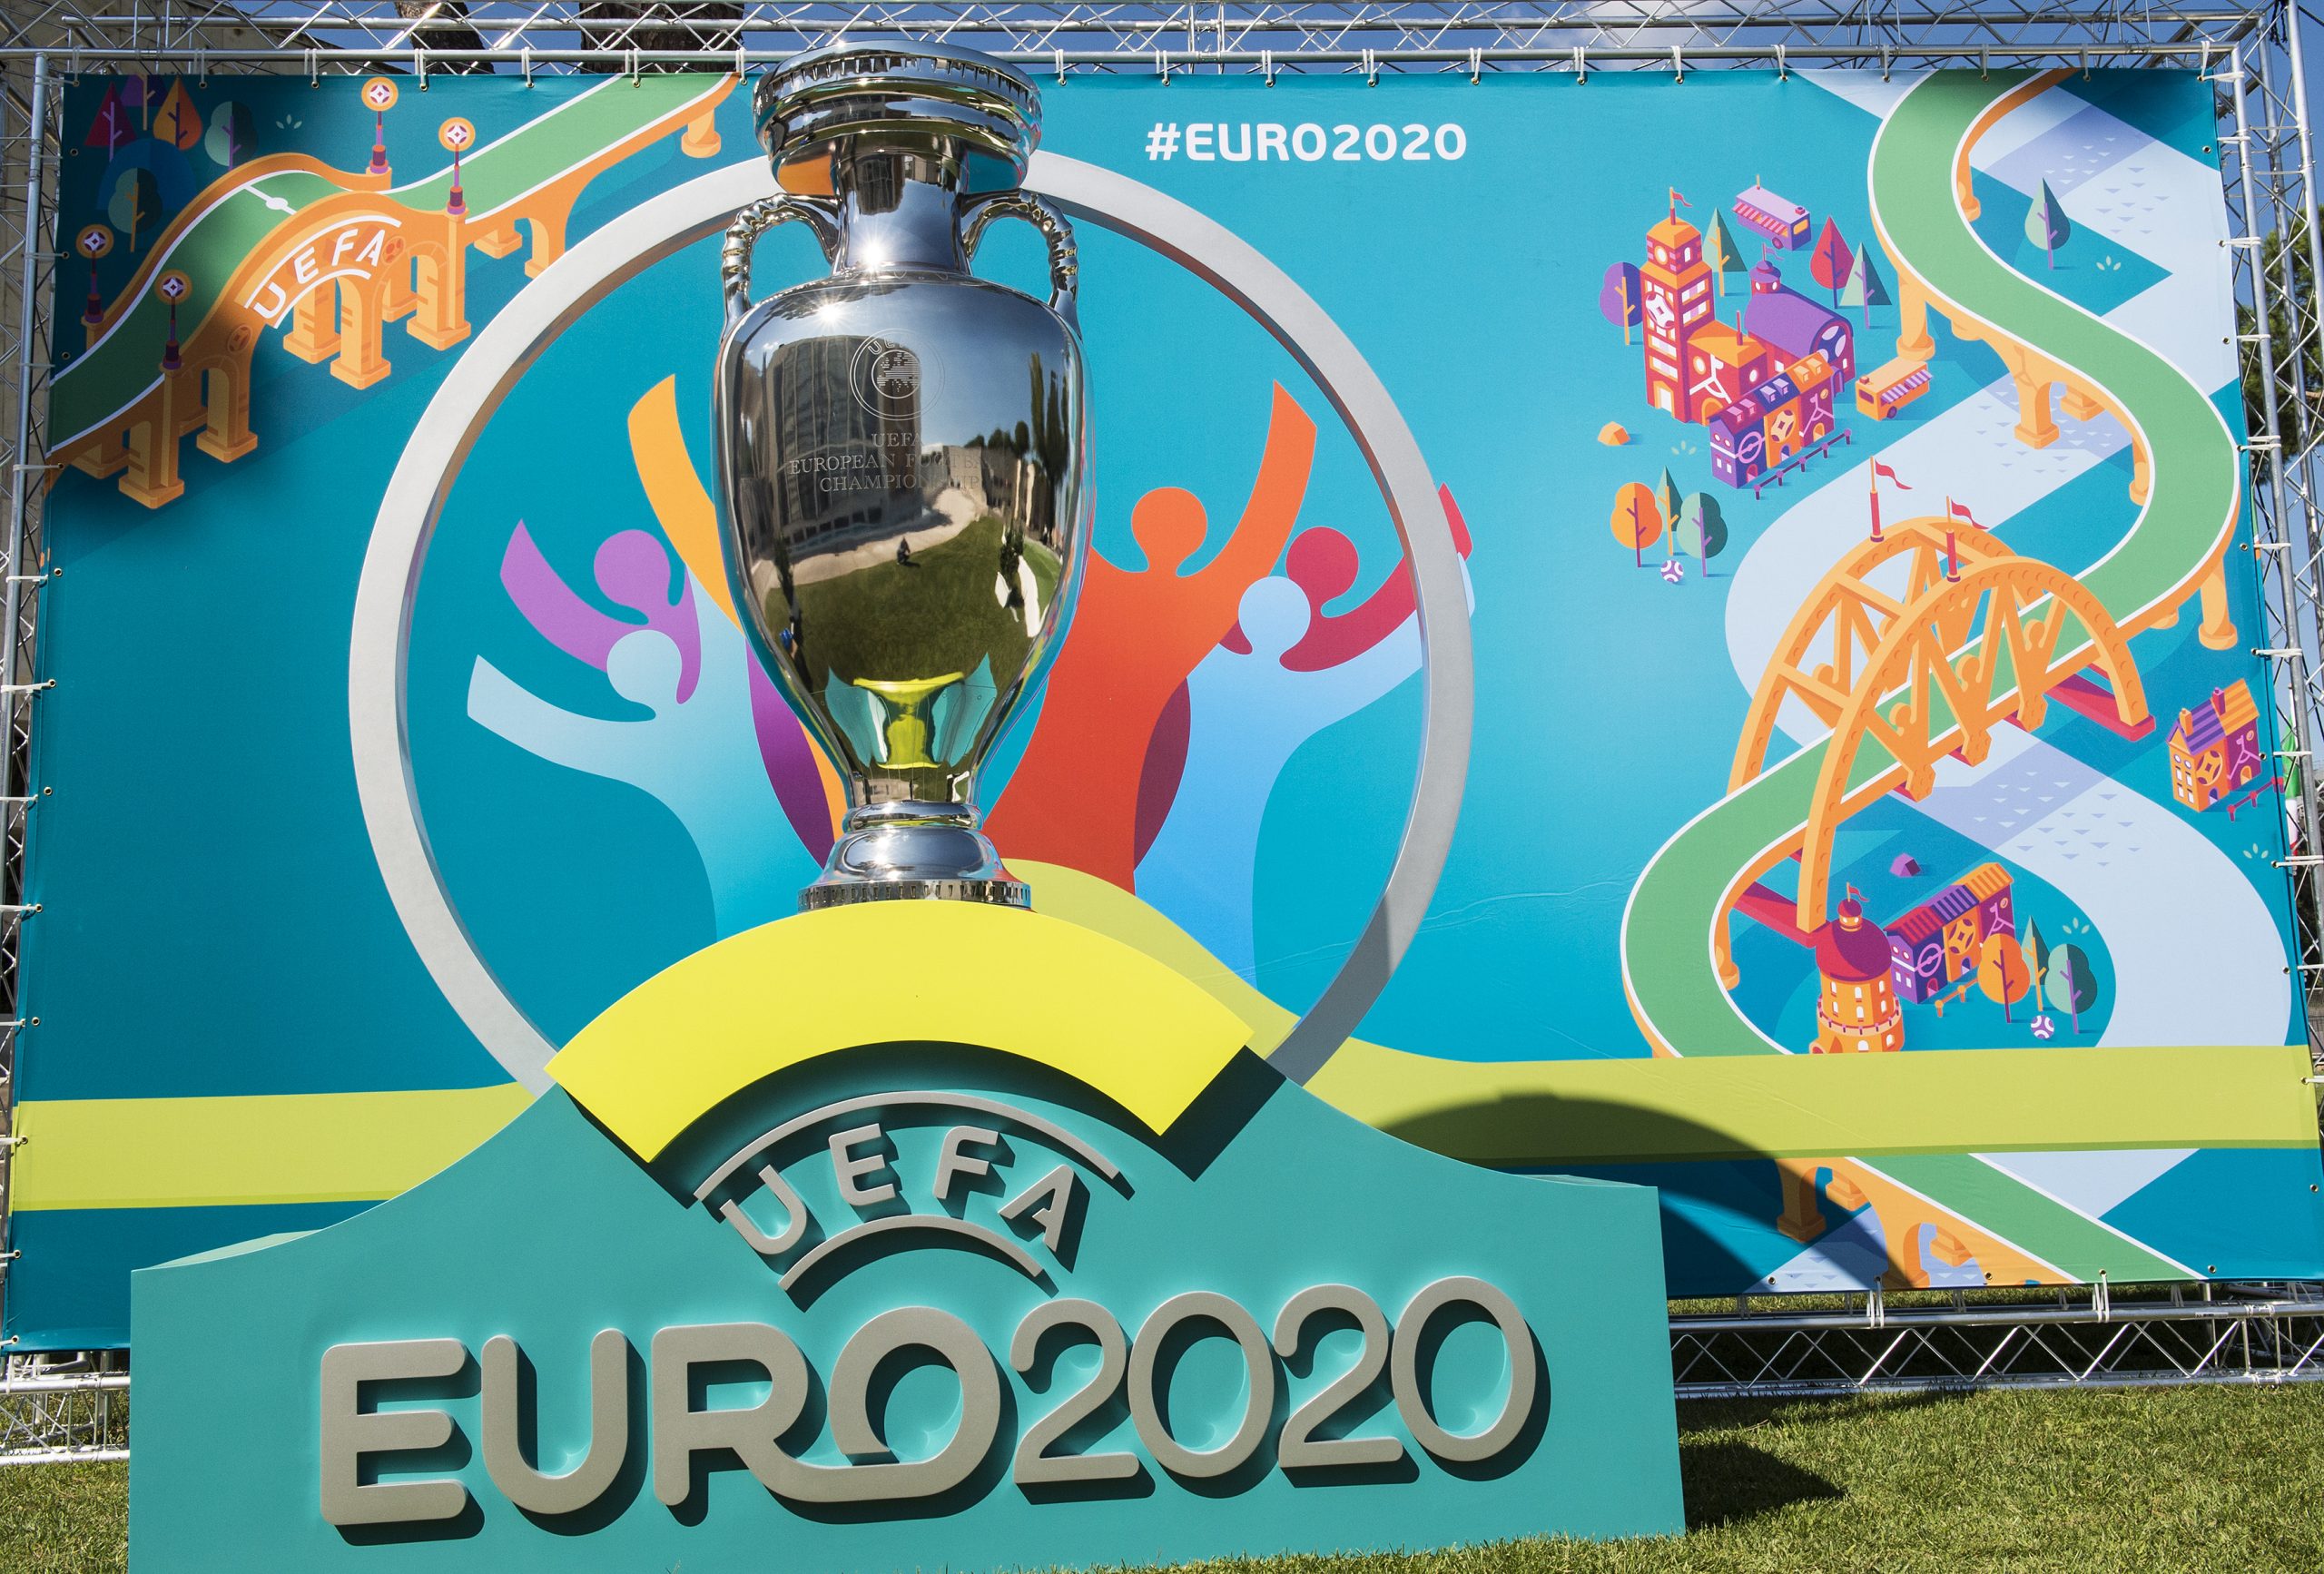 Euro 2020 : Antidopage, une grande équipe déjà qualifiée et menacée d’exclusion